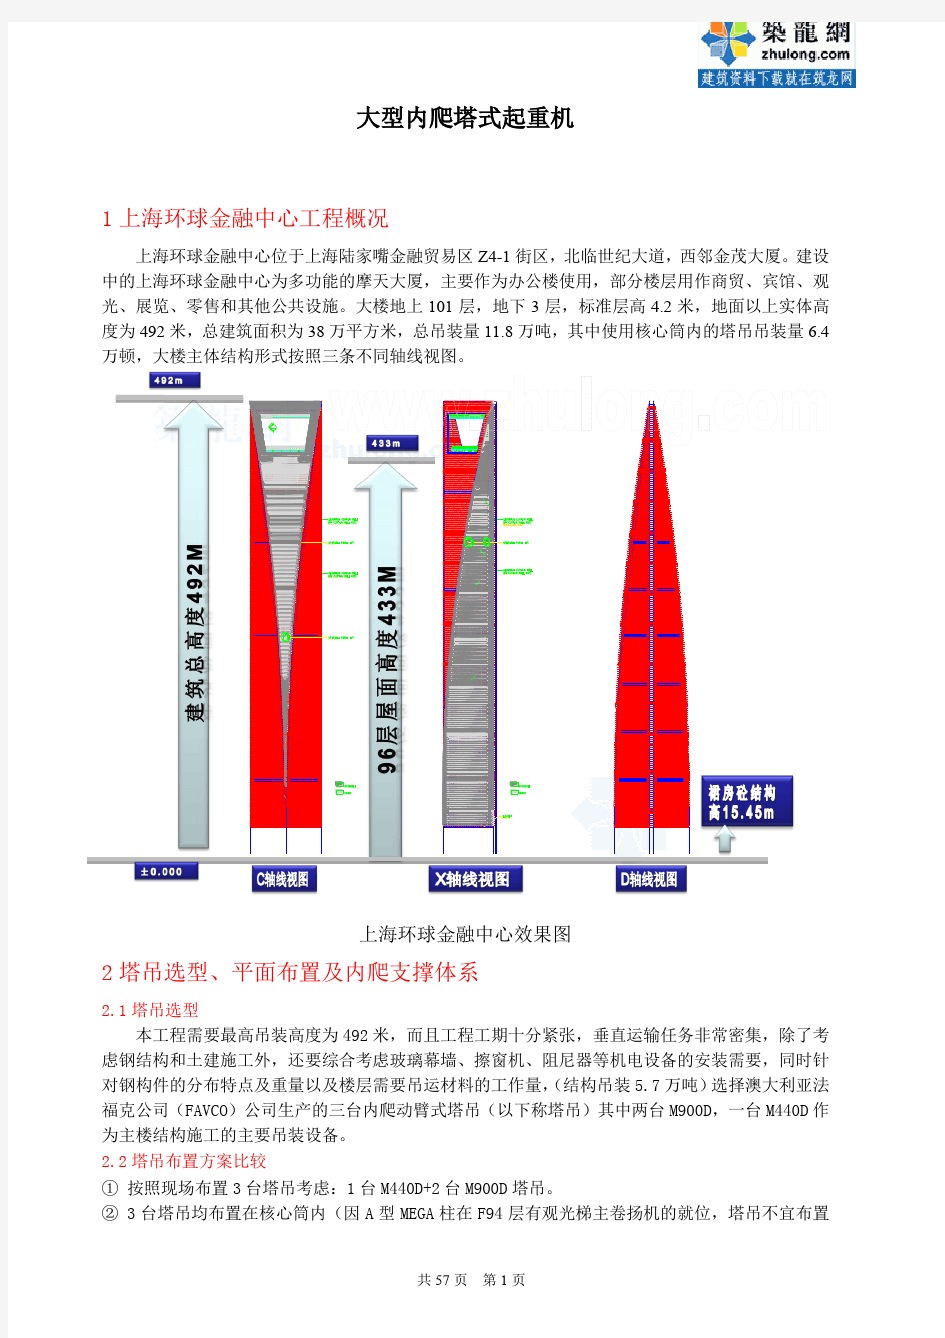 大型塔式起重机在上海环球金融中心工程中的应用_secret